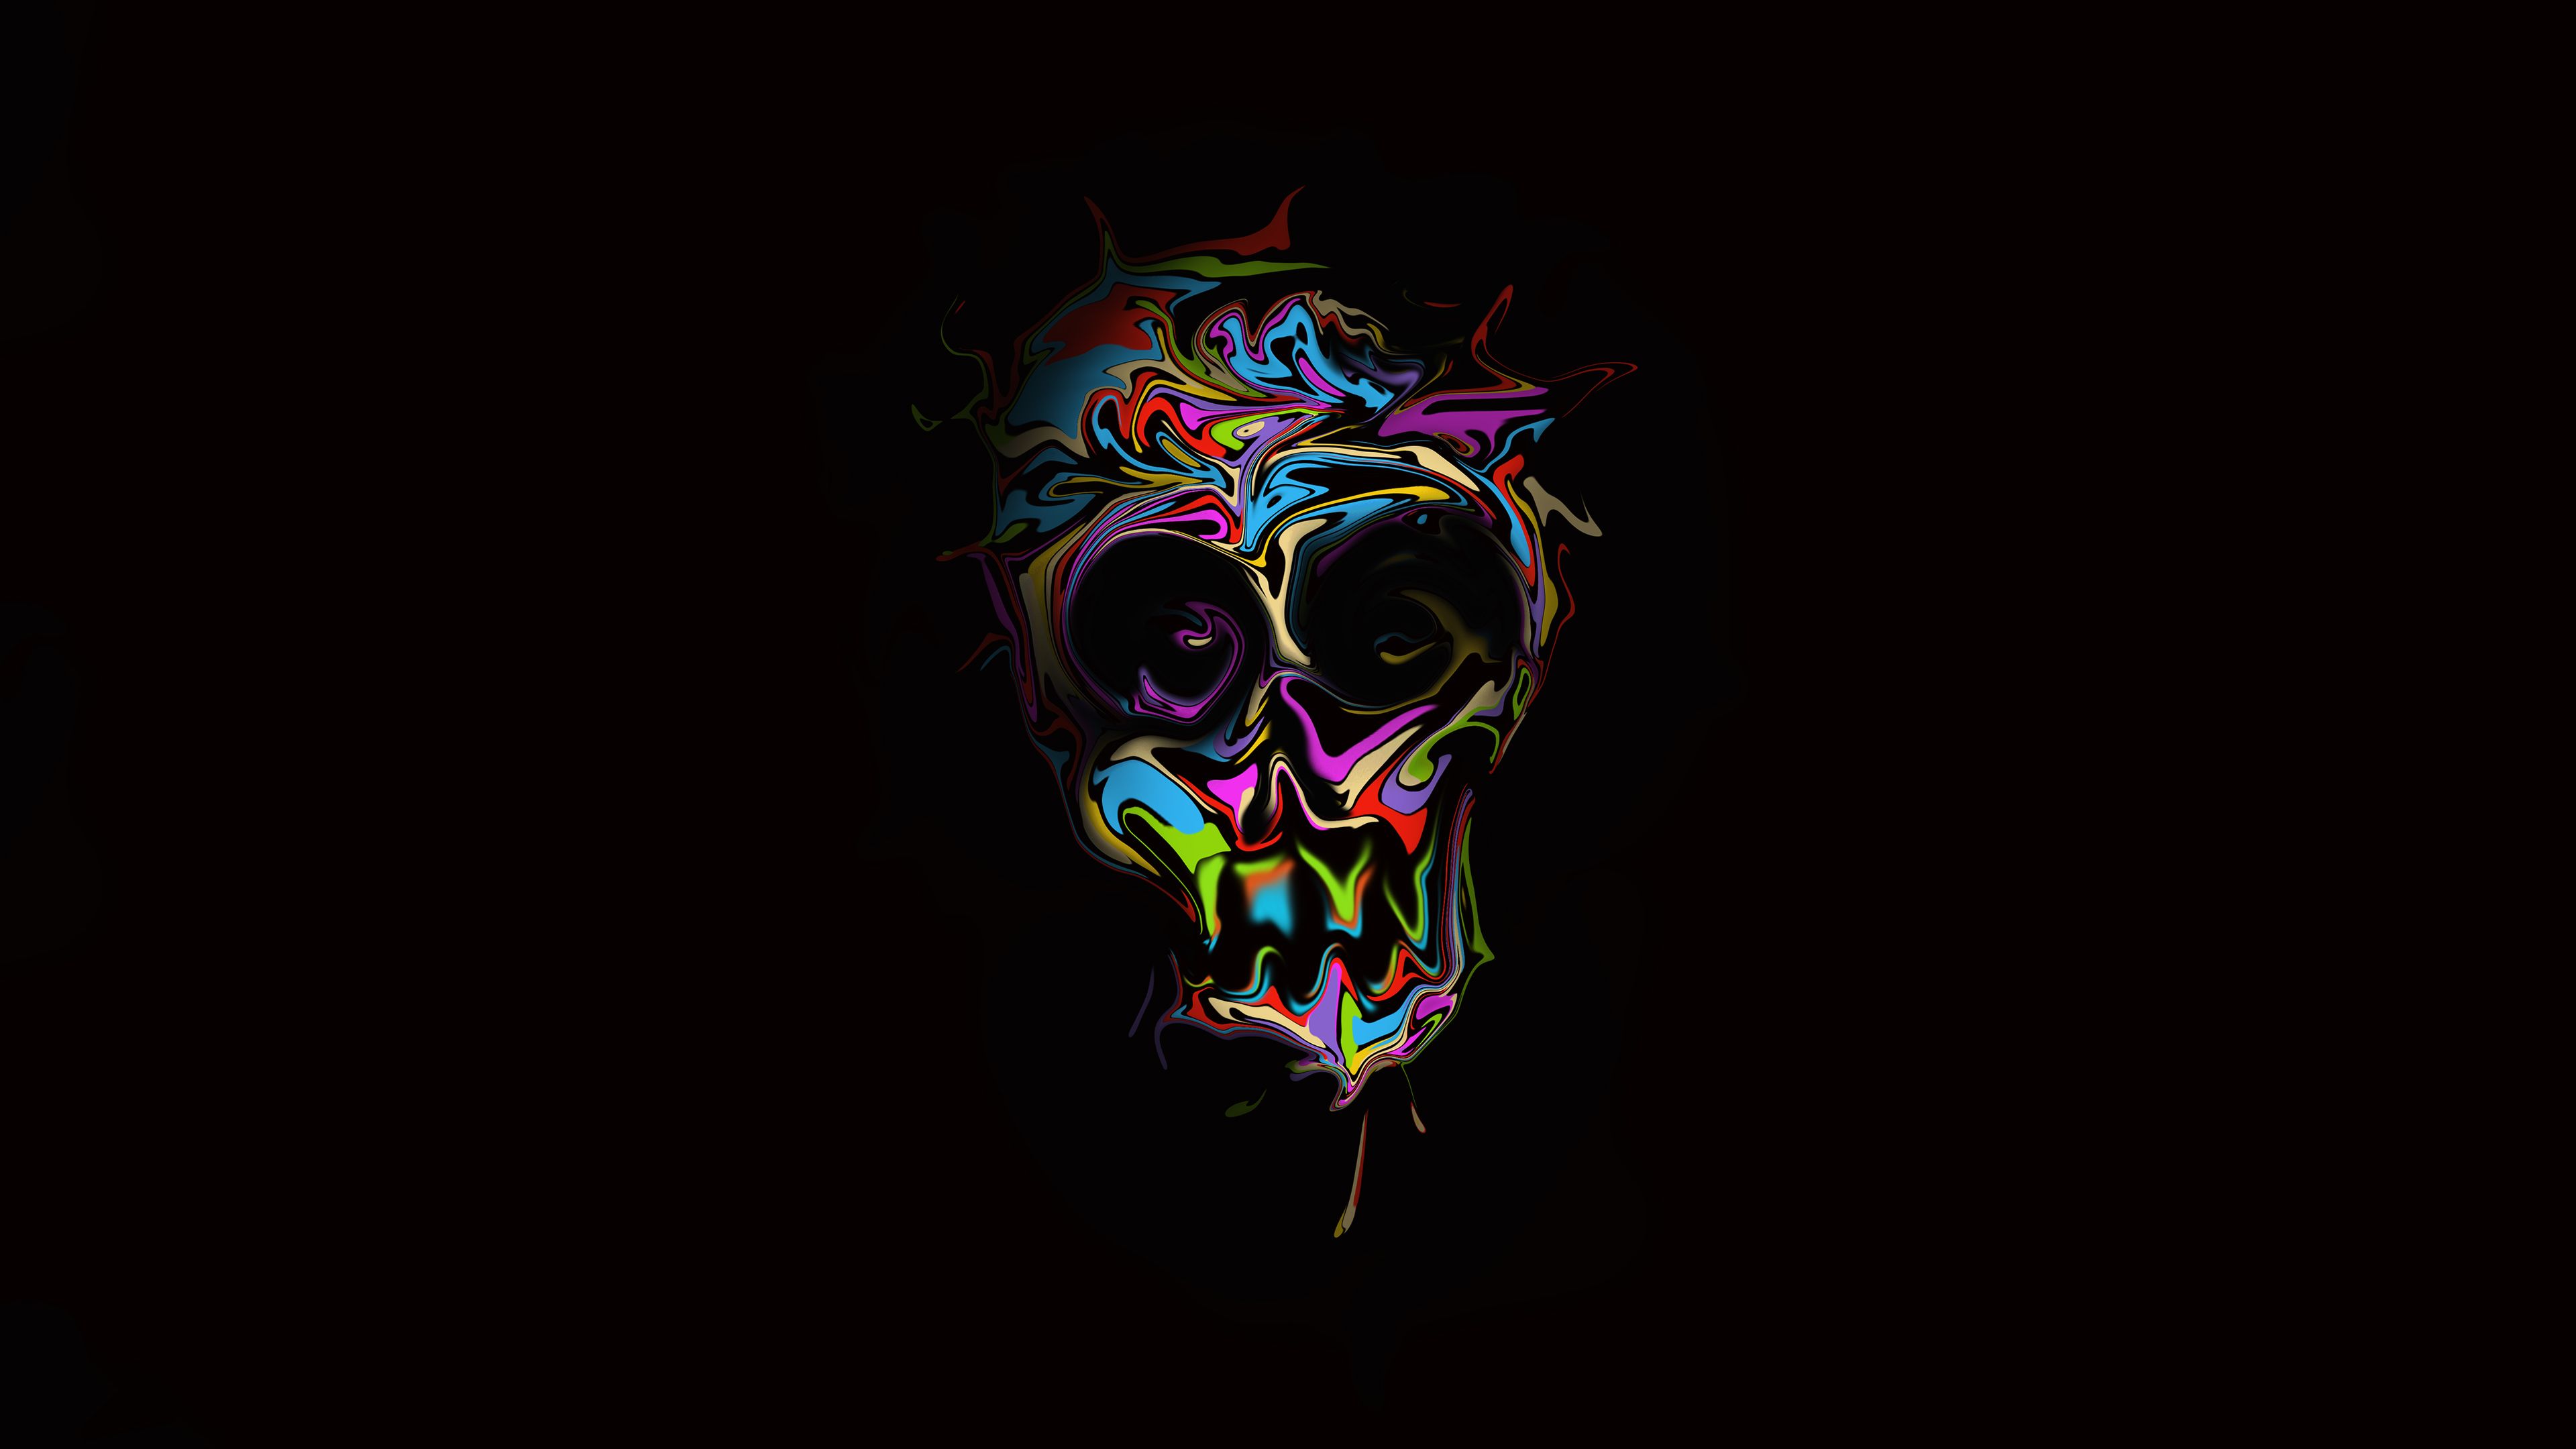 Colorful Skull Dark Art Skull Wallpaper, Hd Wallpaper, Digital Art Wallpaper, Colorful Wallpaper,. Skull Wallpaper, Desktop Wallpaper Black, Glitch Wallpaper